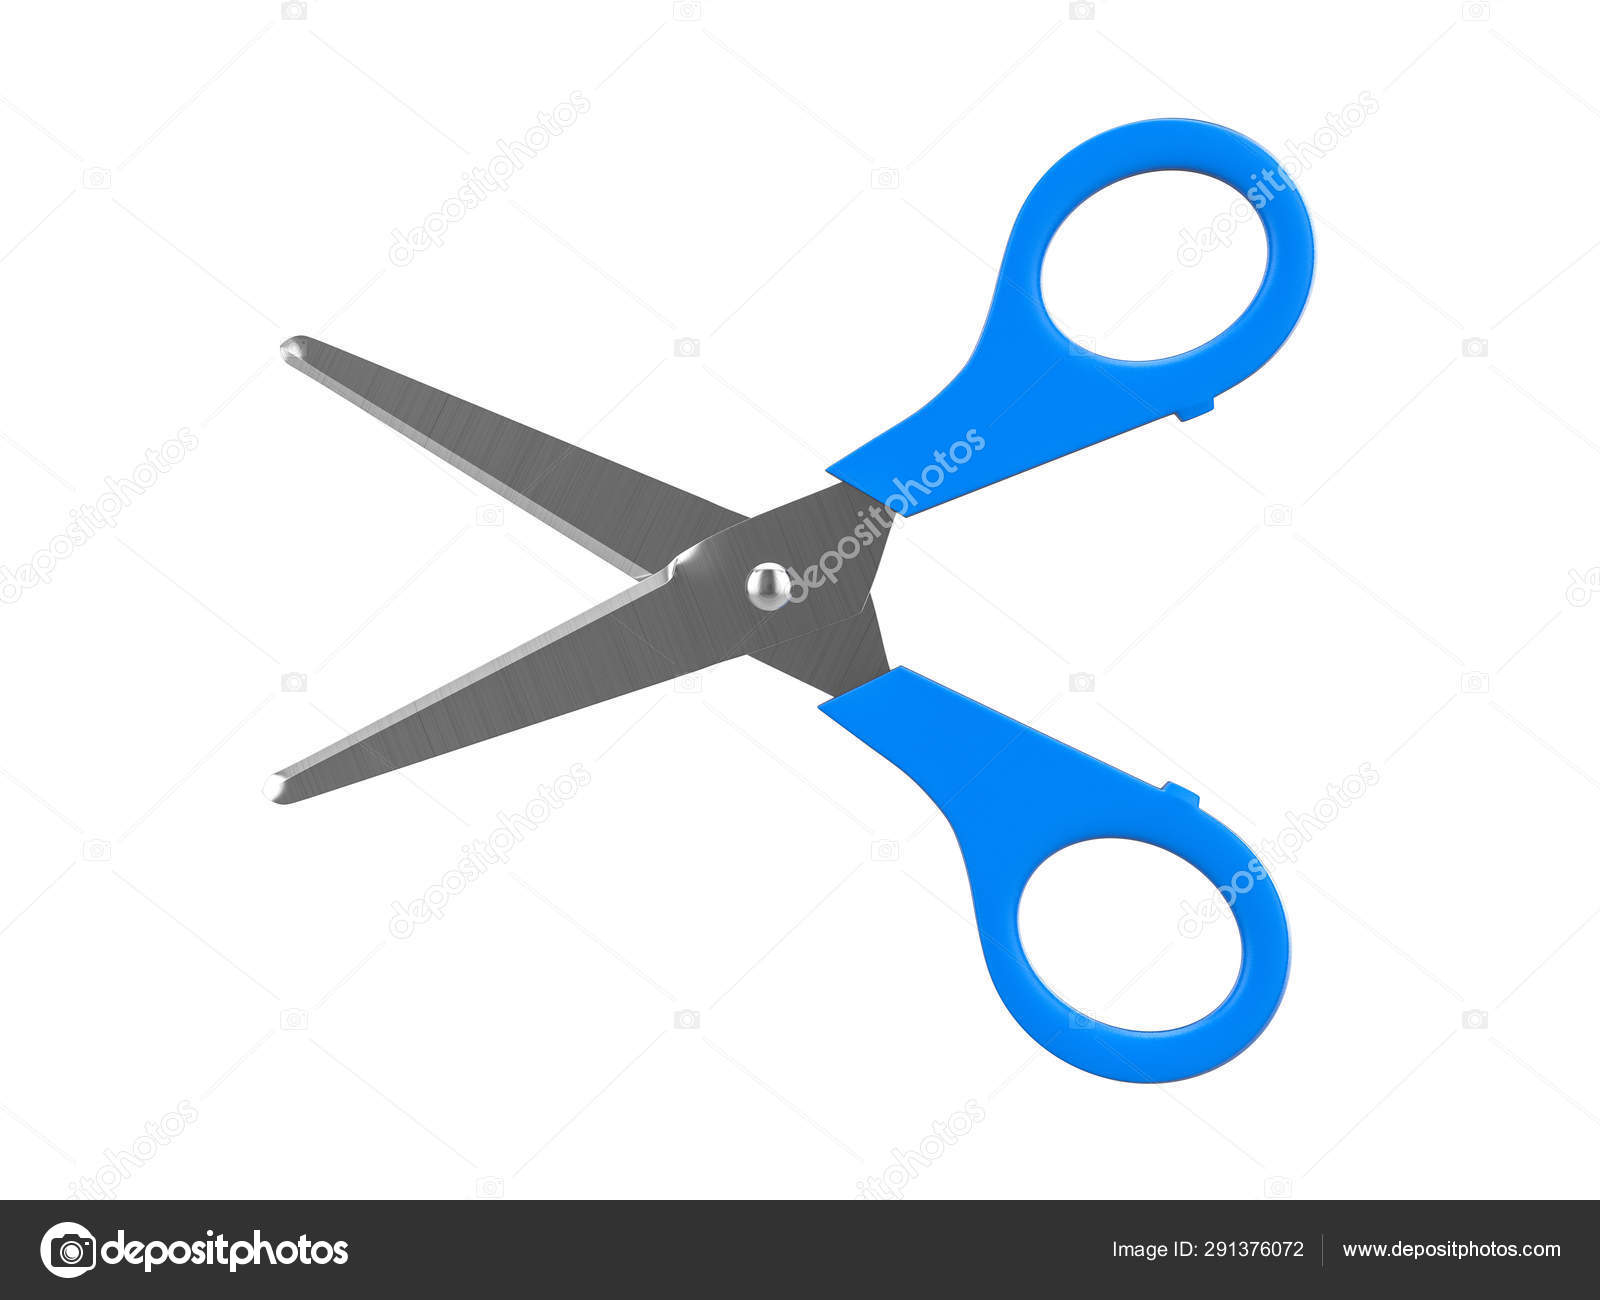 https://st4.depositphotos.com/1000244/29137/i/1600/depositphotos_291376072-stock-photo-scissors.jpg